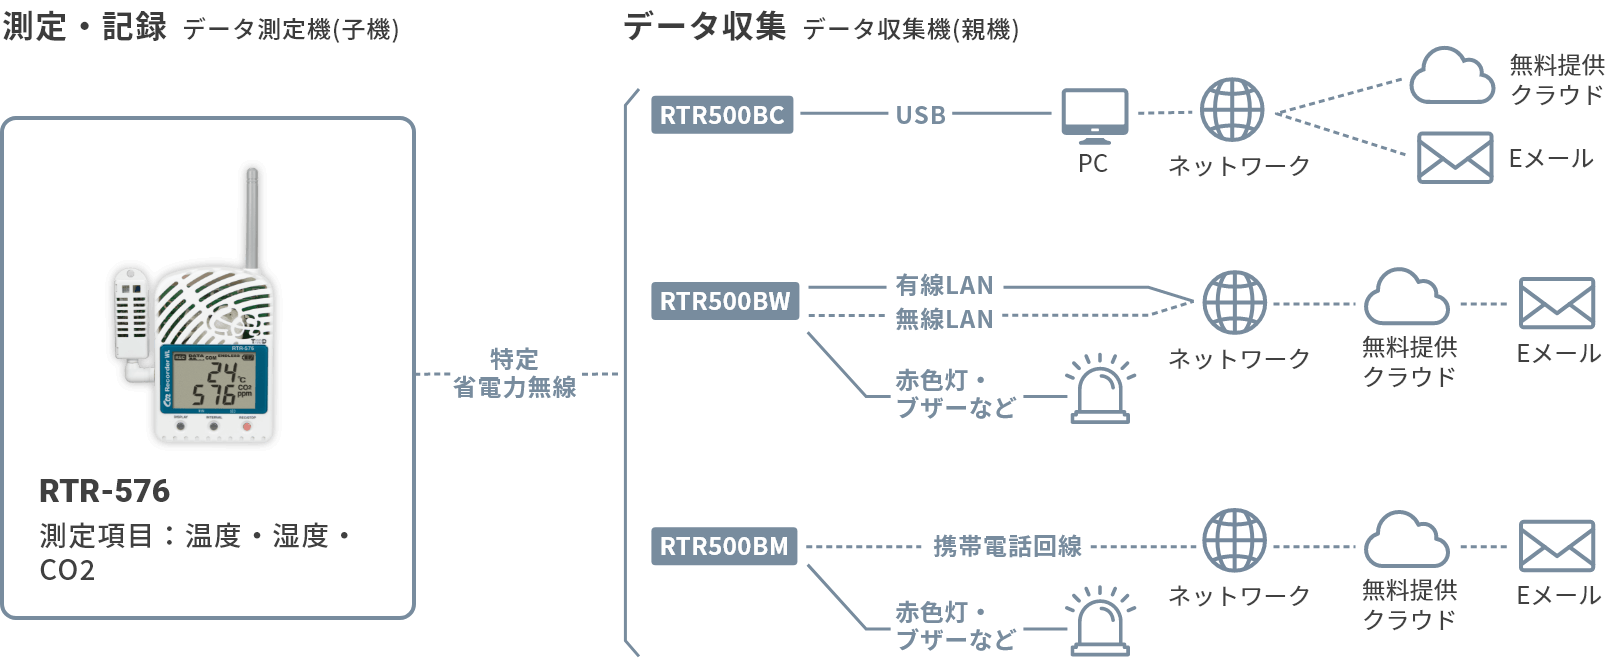 おんどとり Jr.Wireless RTR-576 【91%OFF!】